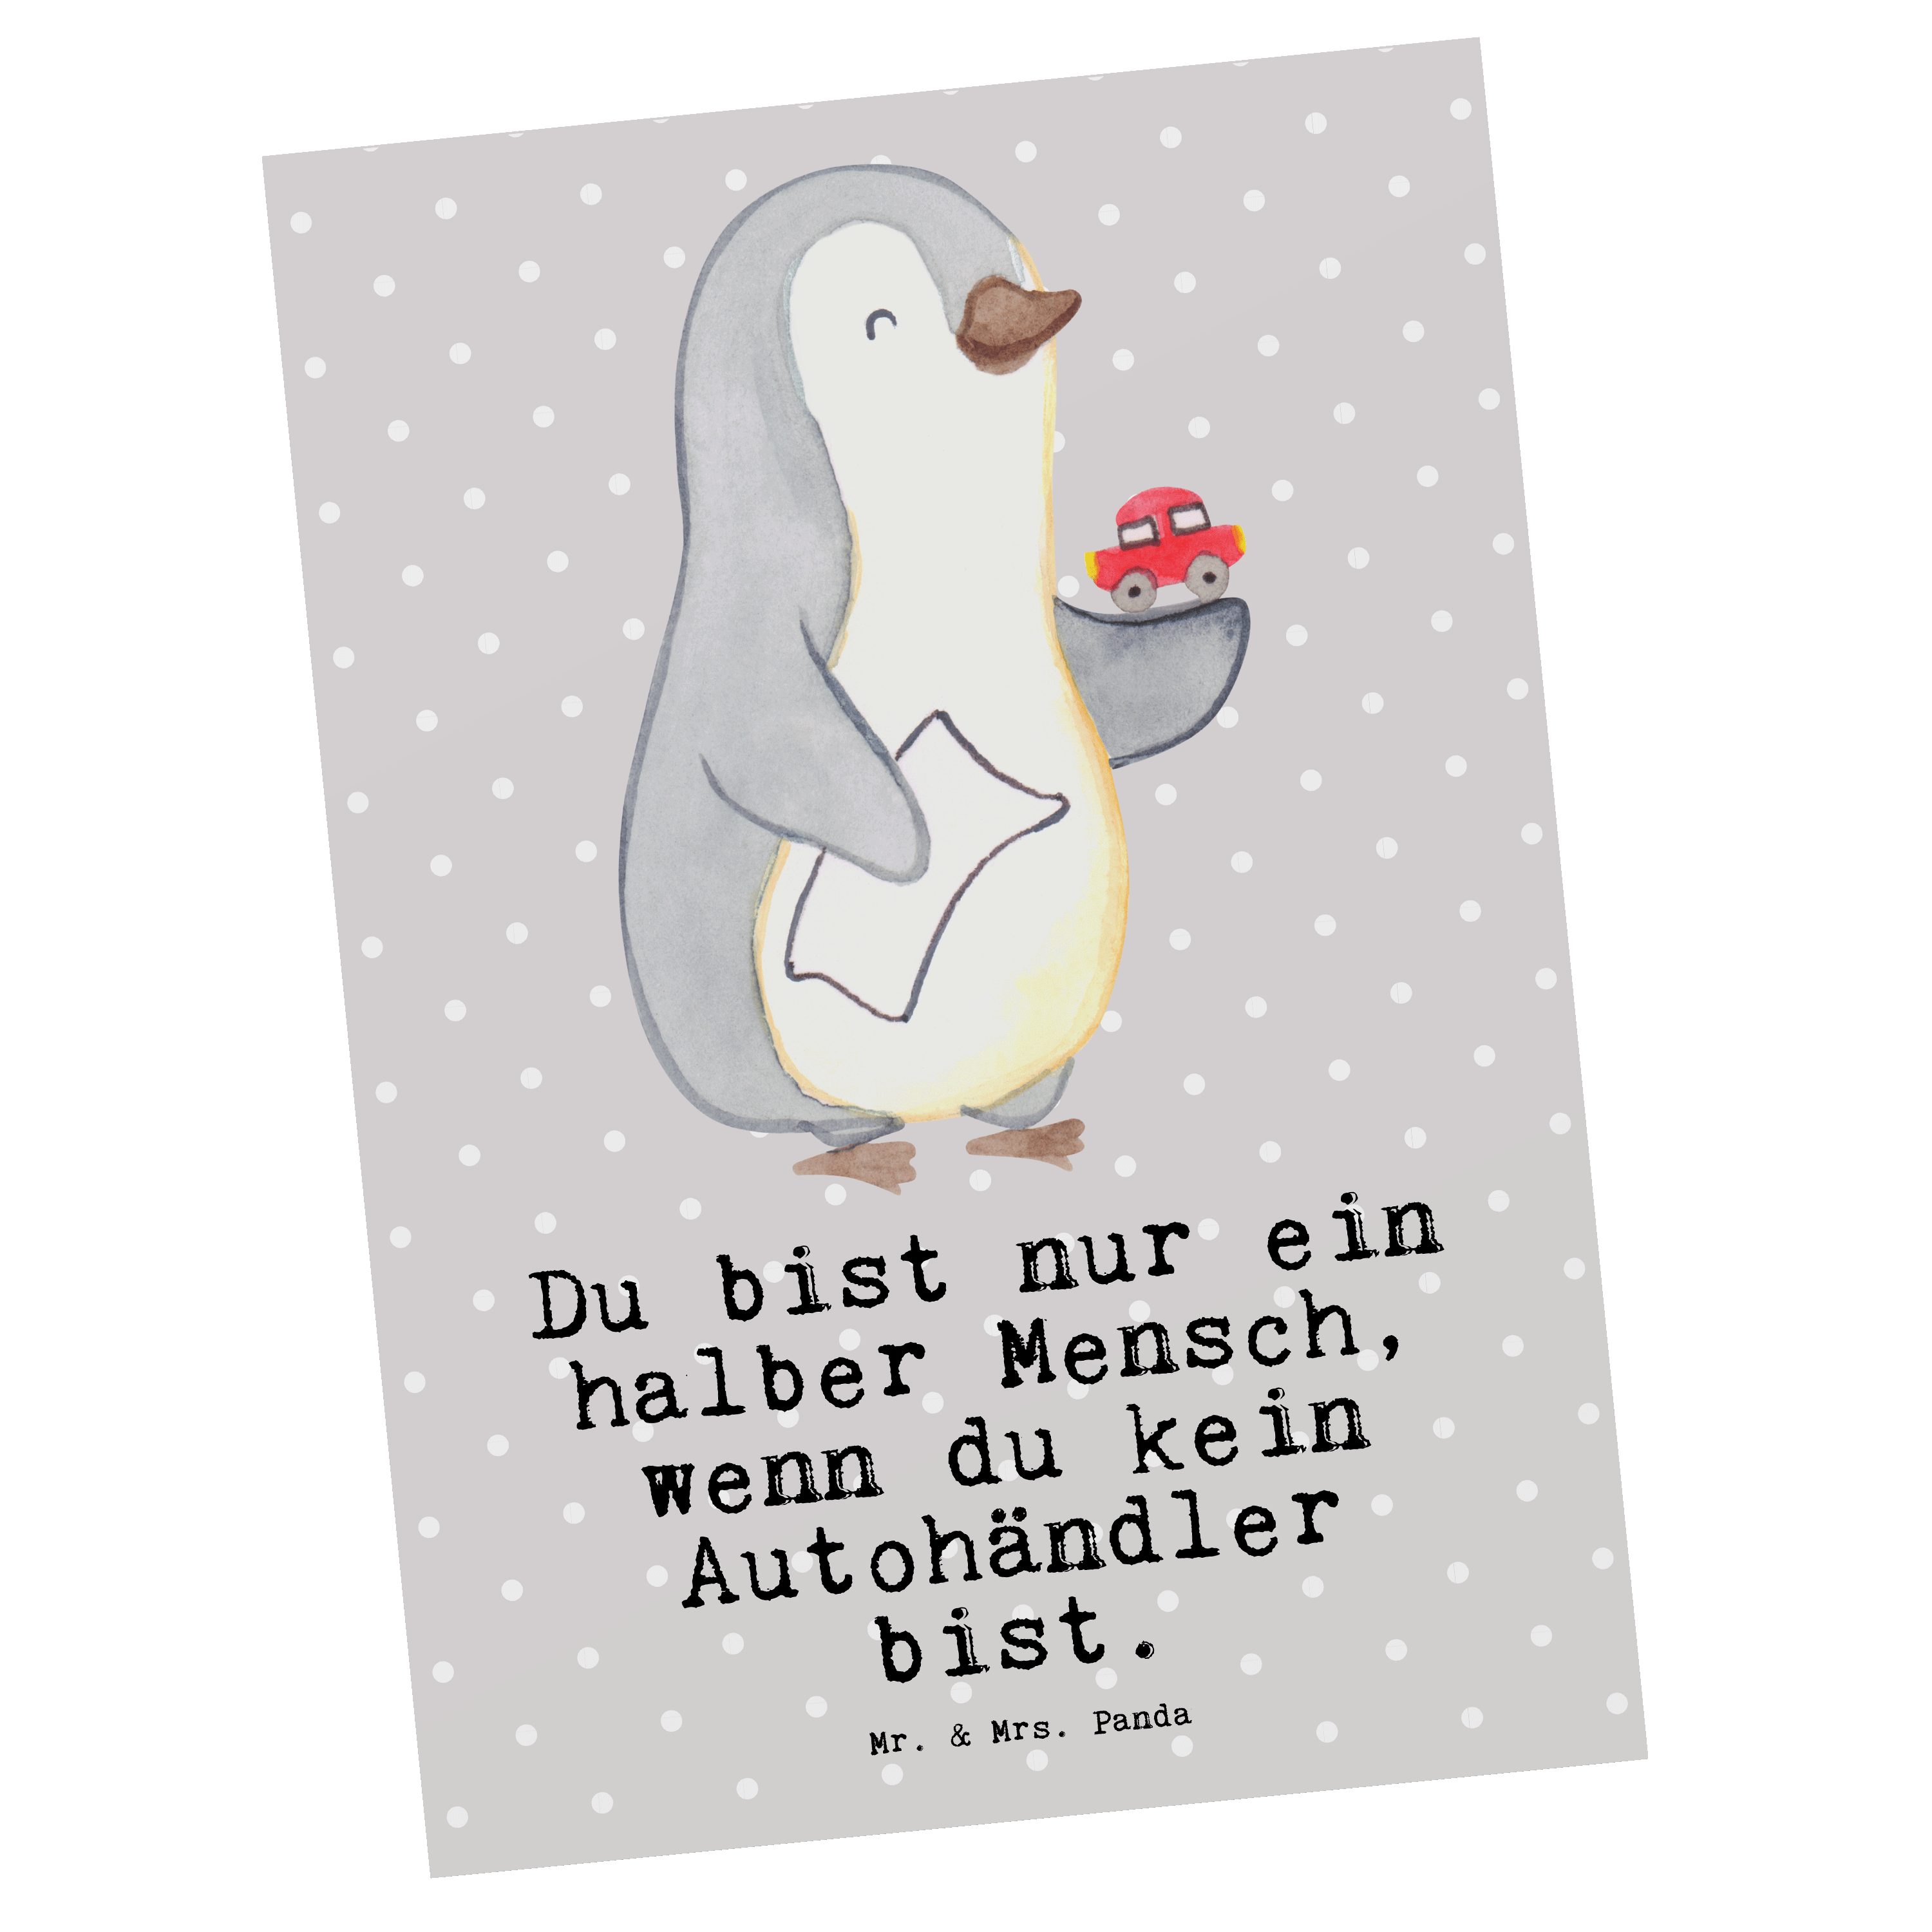 Mr. & Mrs. Panda Postkarte Autohändler mit Herz - Grau Pastell - Geschenk, Führerschein, Ansicht